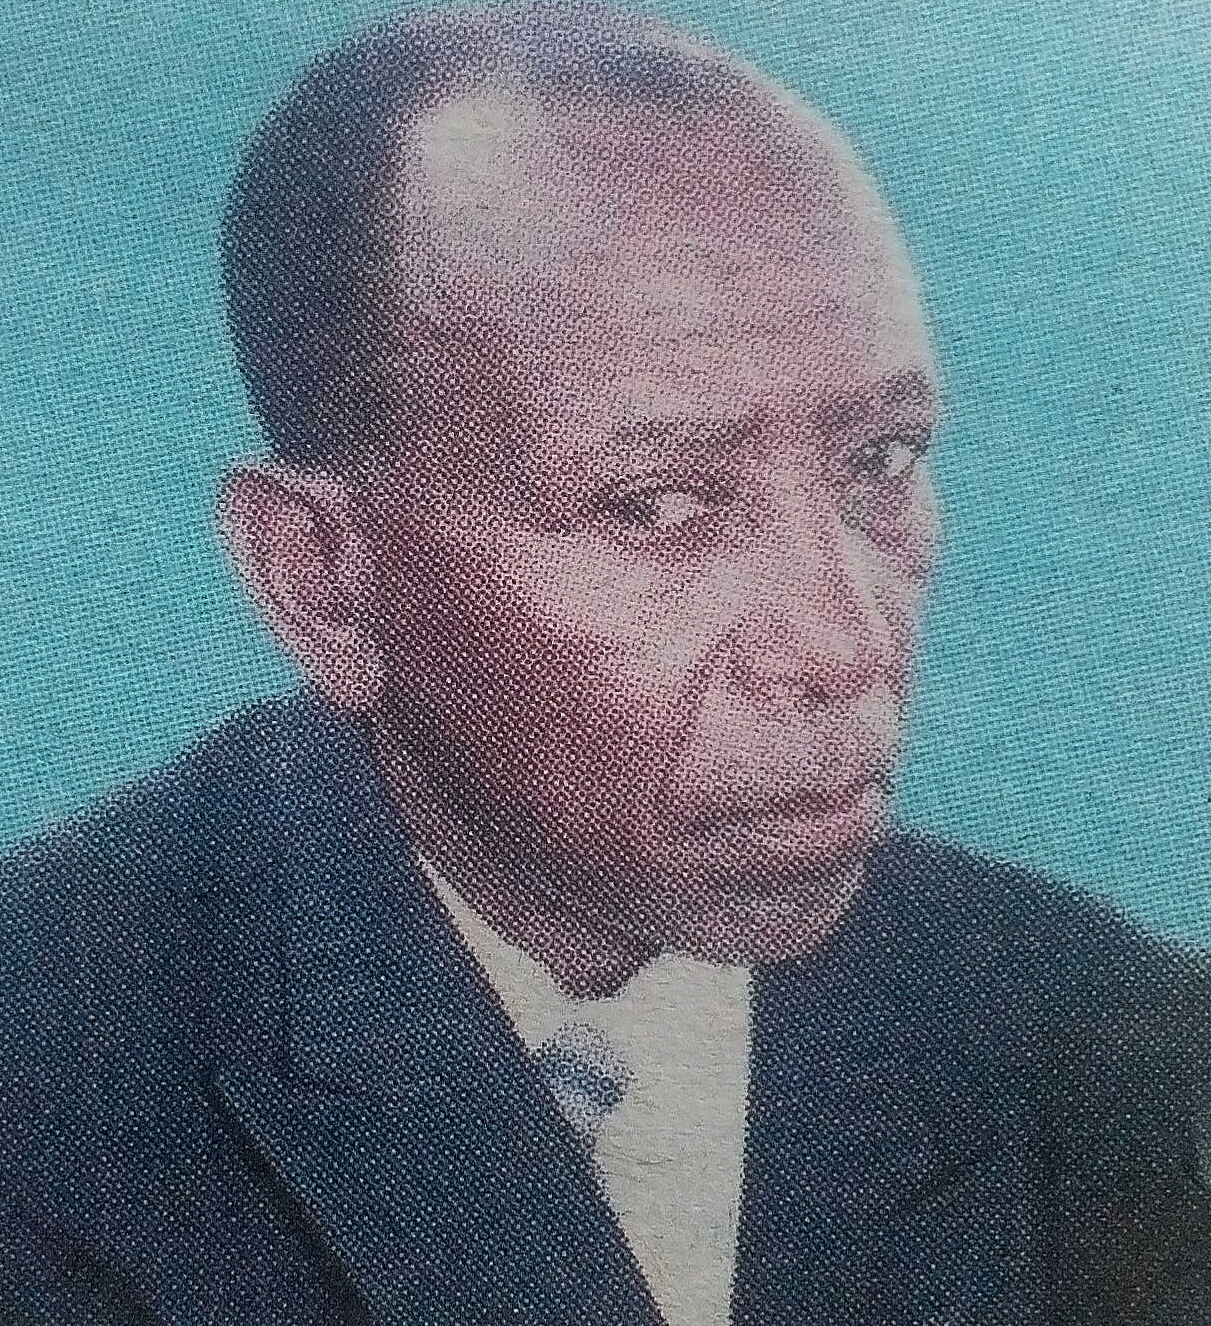 Obituary Image of Stanley Mualuko Wambua